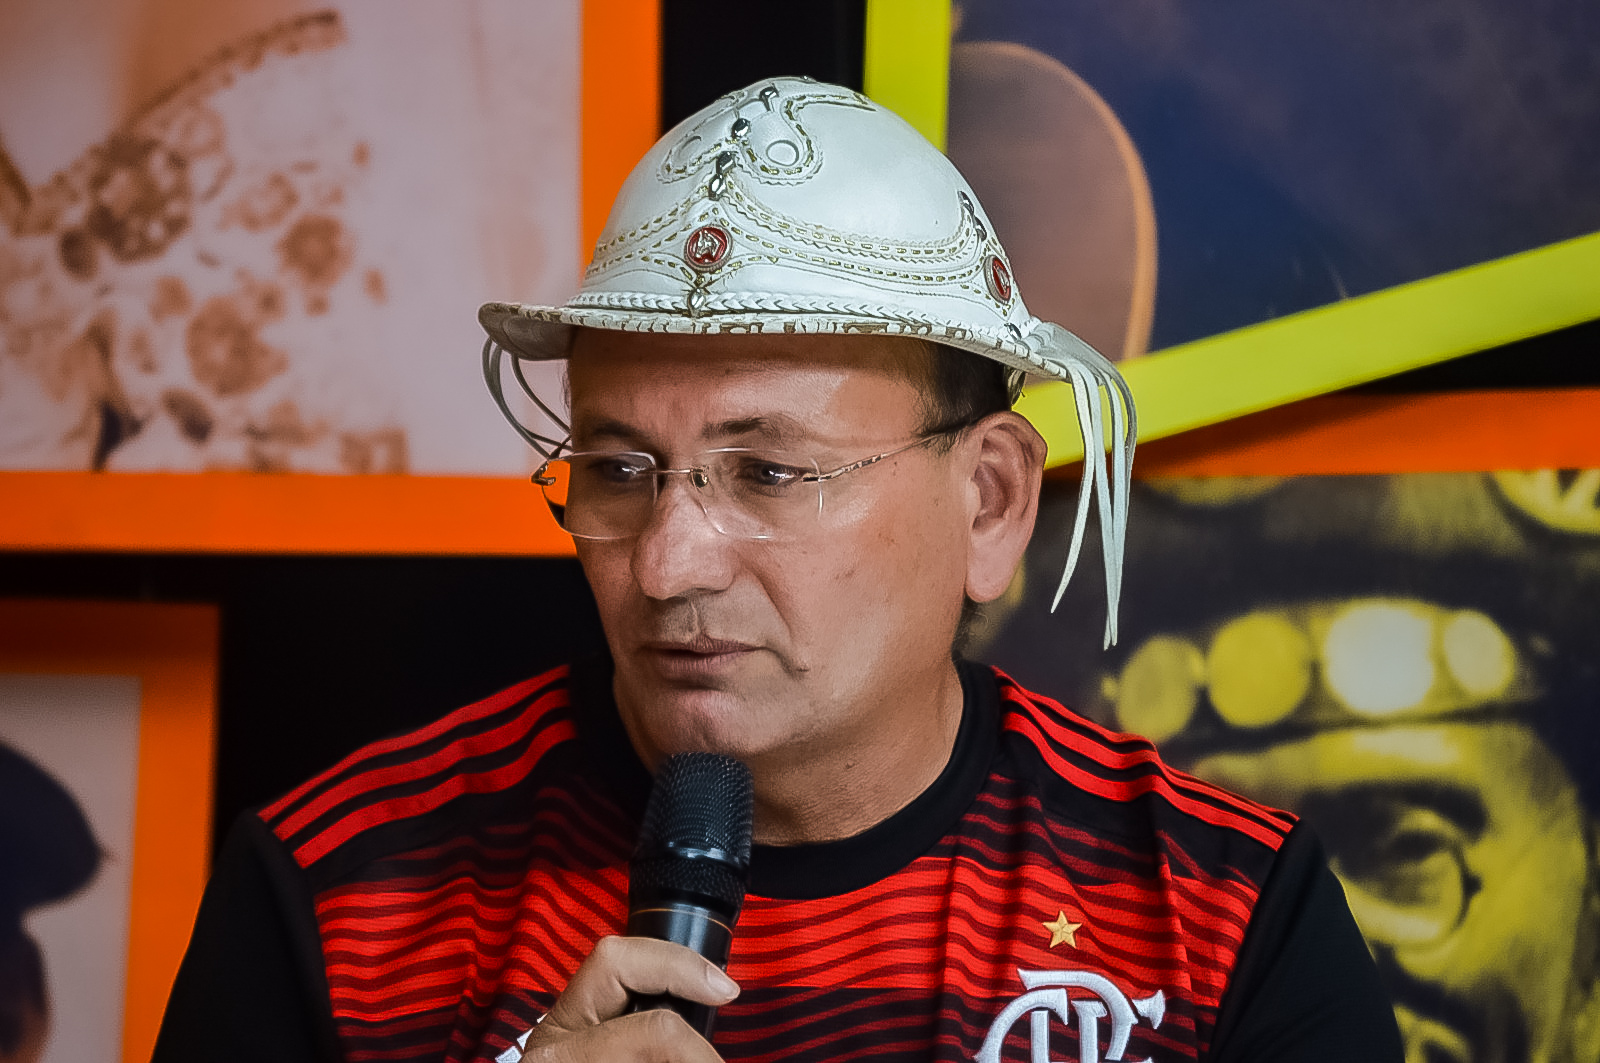 Zé Pereira comenta após ataques: "ST será a cidade da lagartixa"